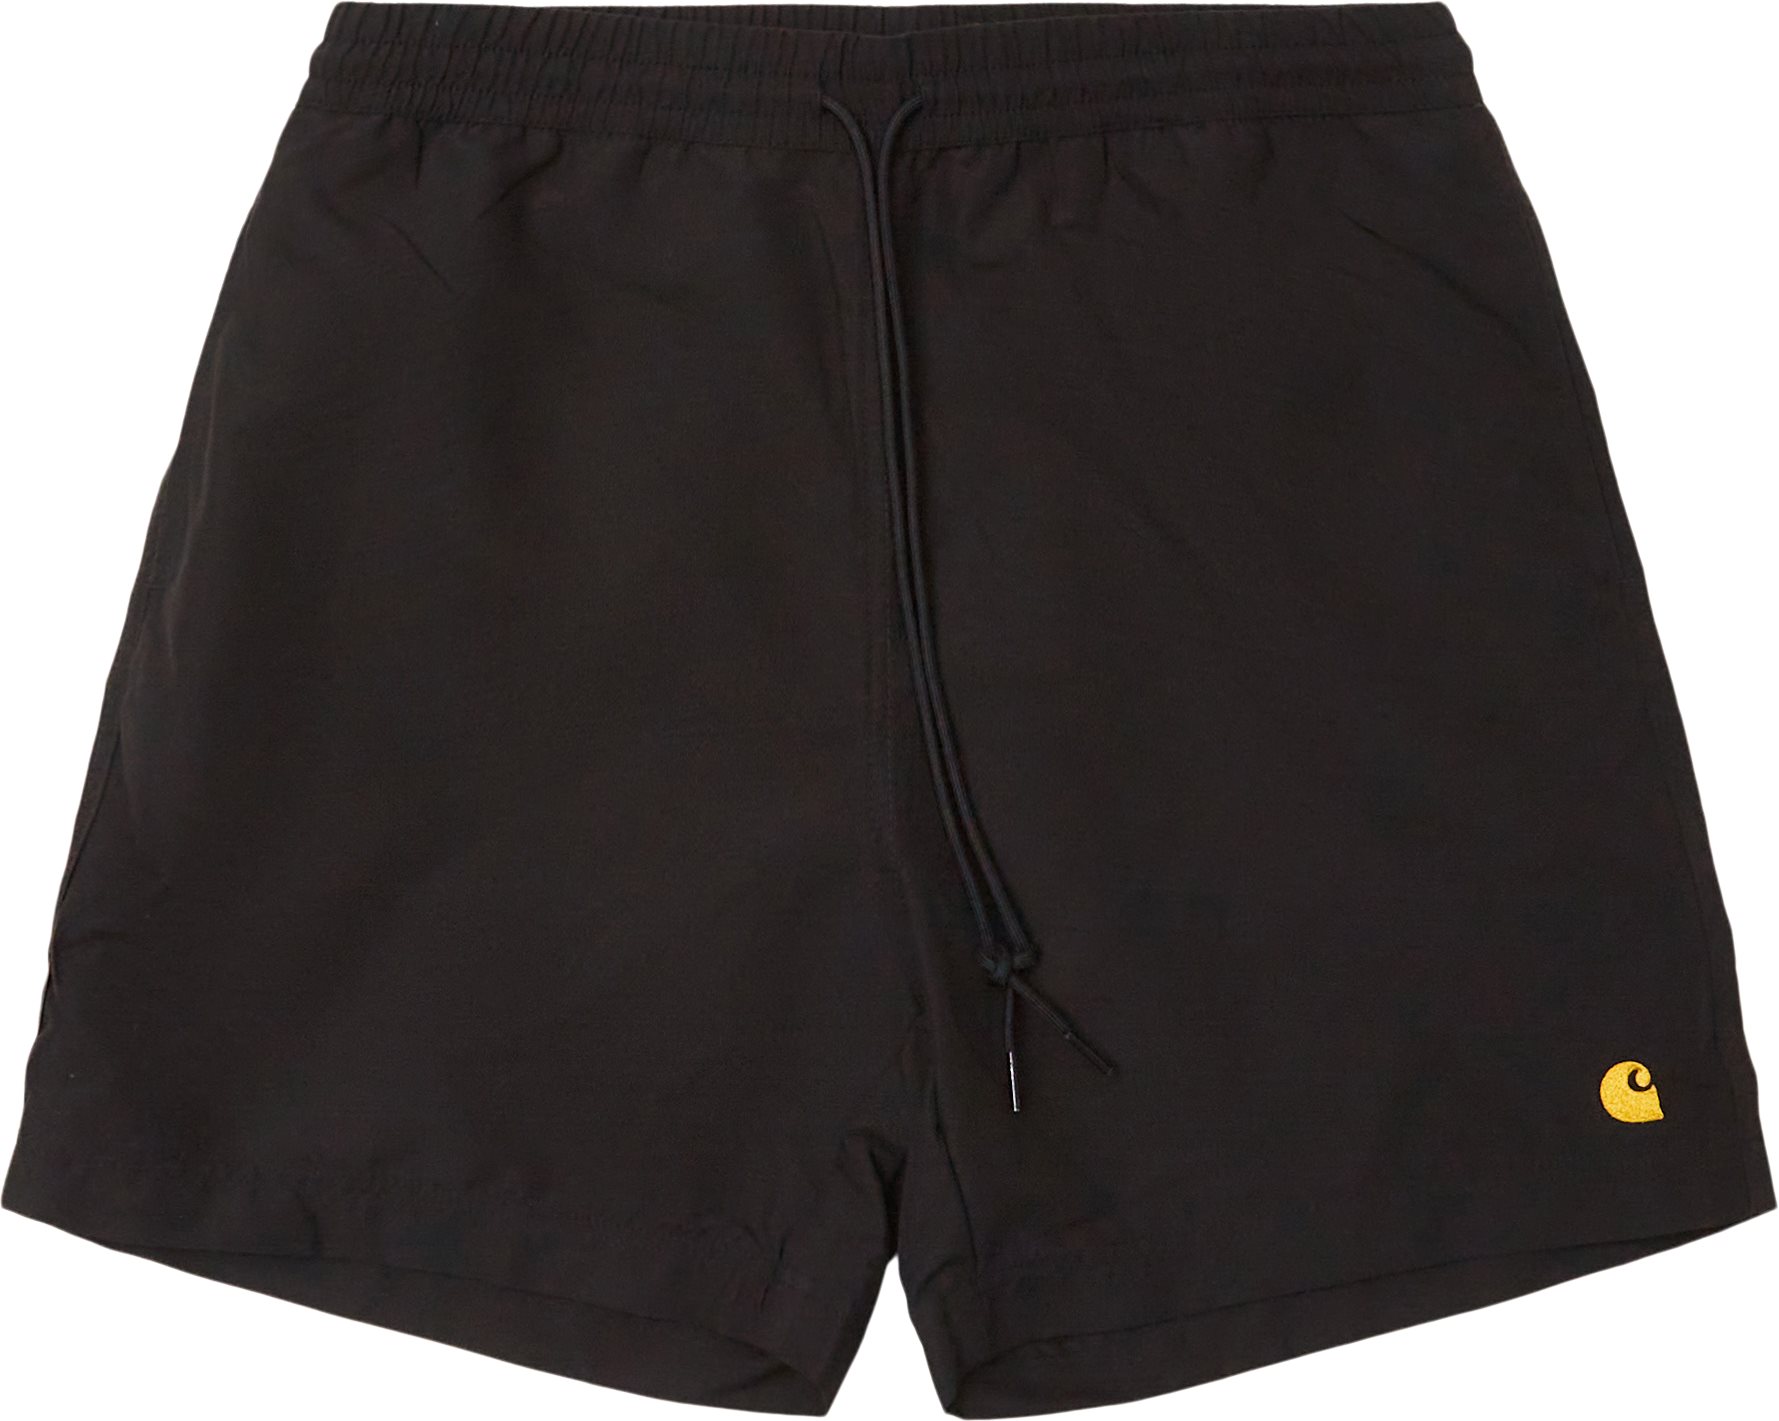 Chase Badebukser I026235 - Shorts - Regular fit - Sort